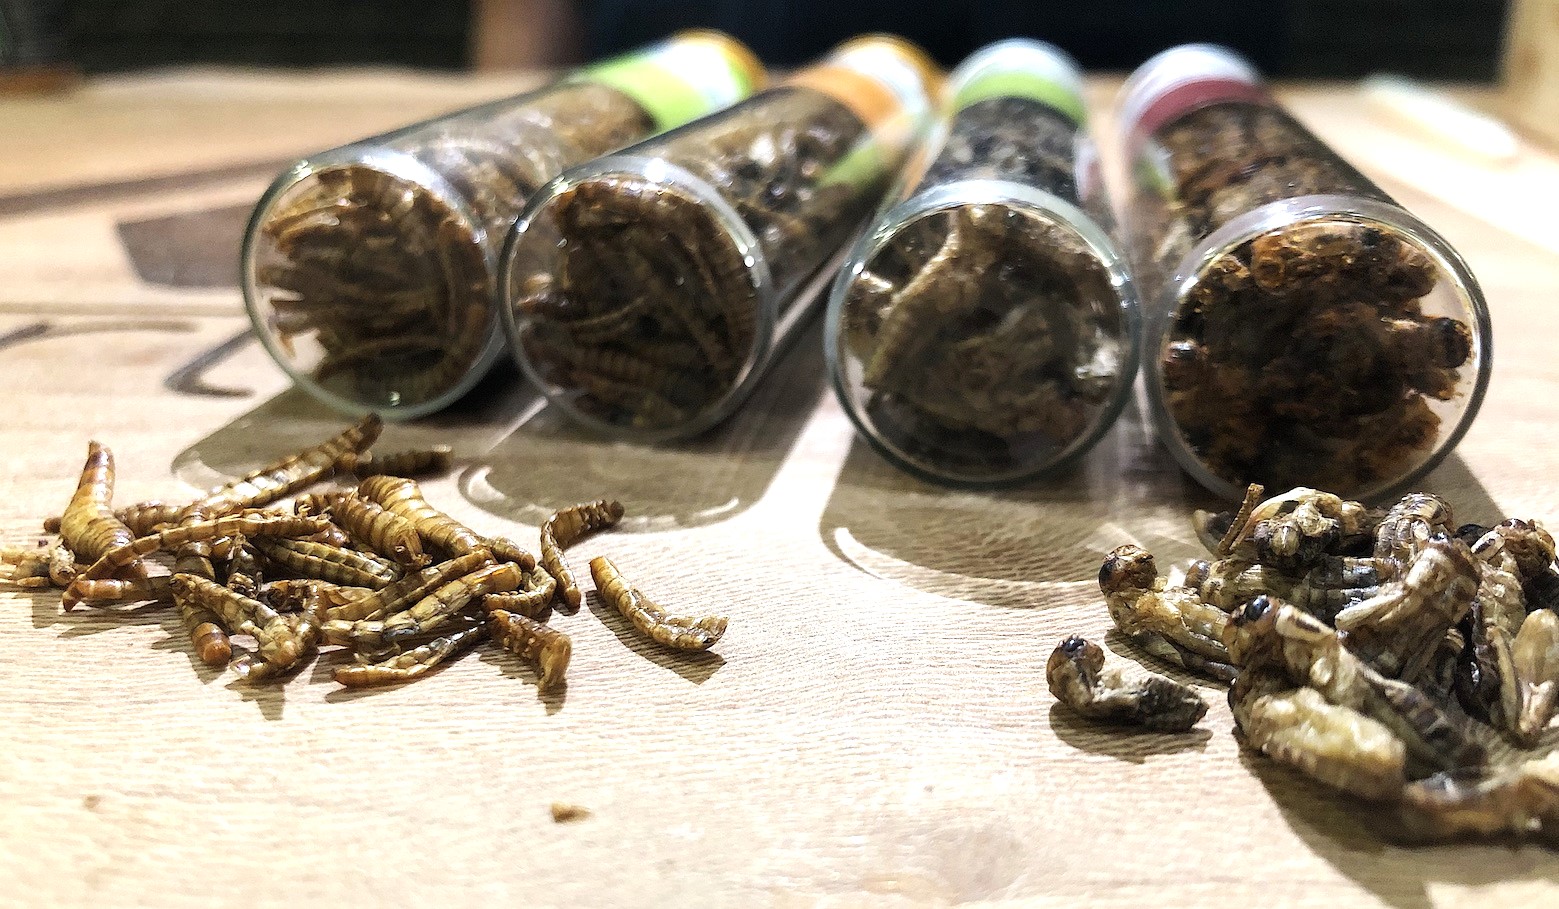 L'entomophagie : manger des insectes pour sauver la planète ?